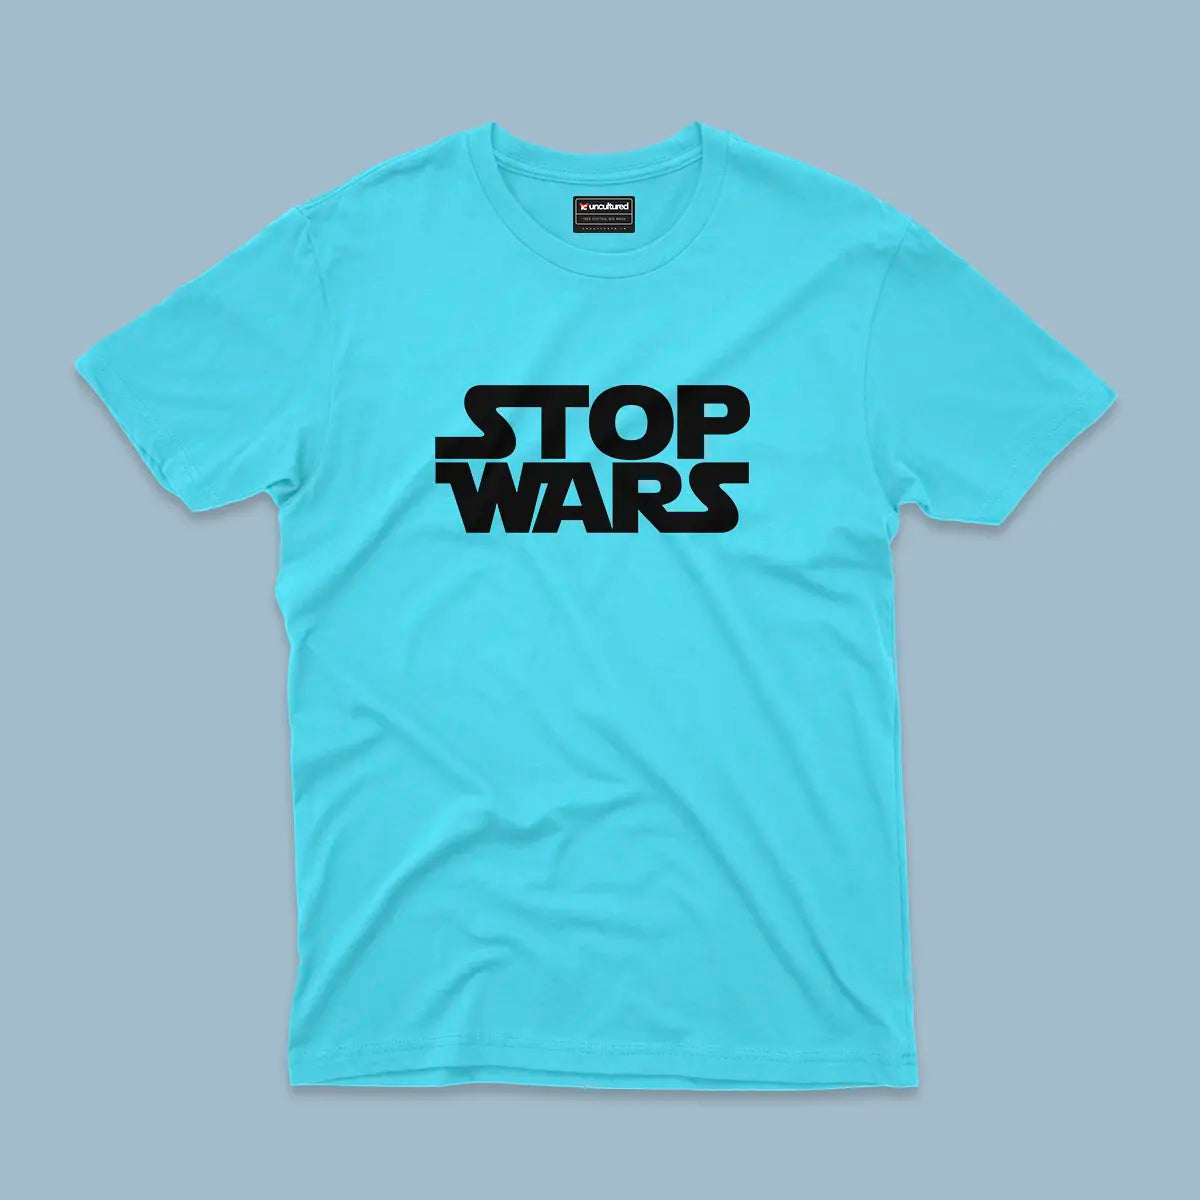 Stop wars - Unisex